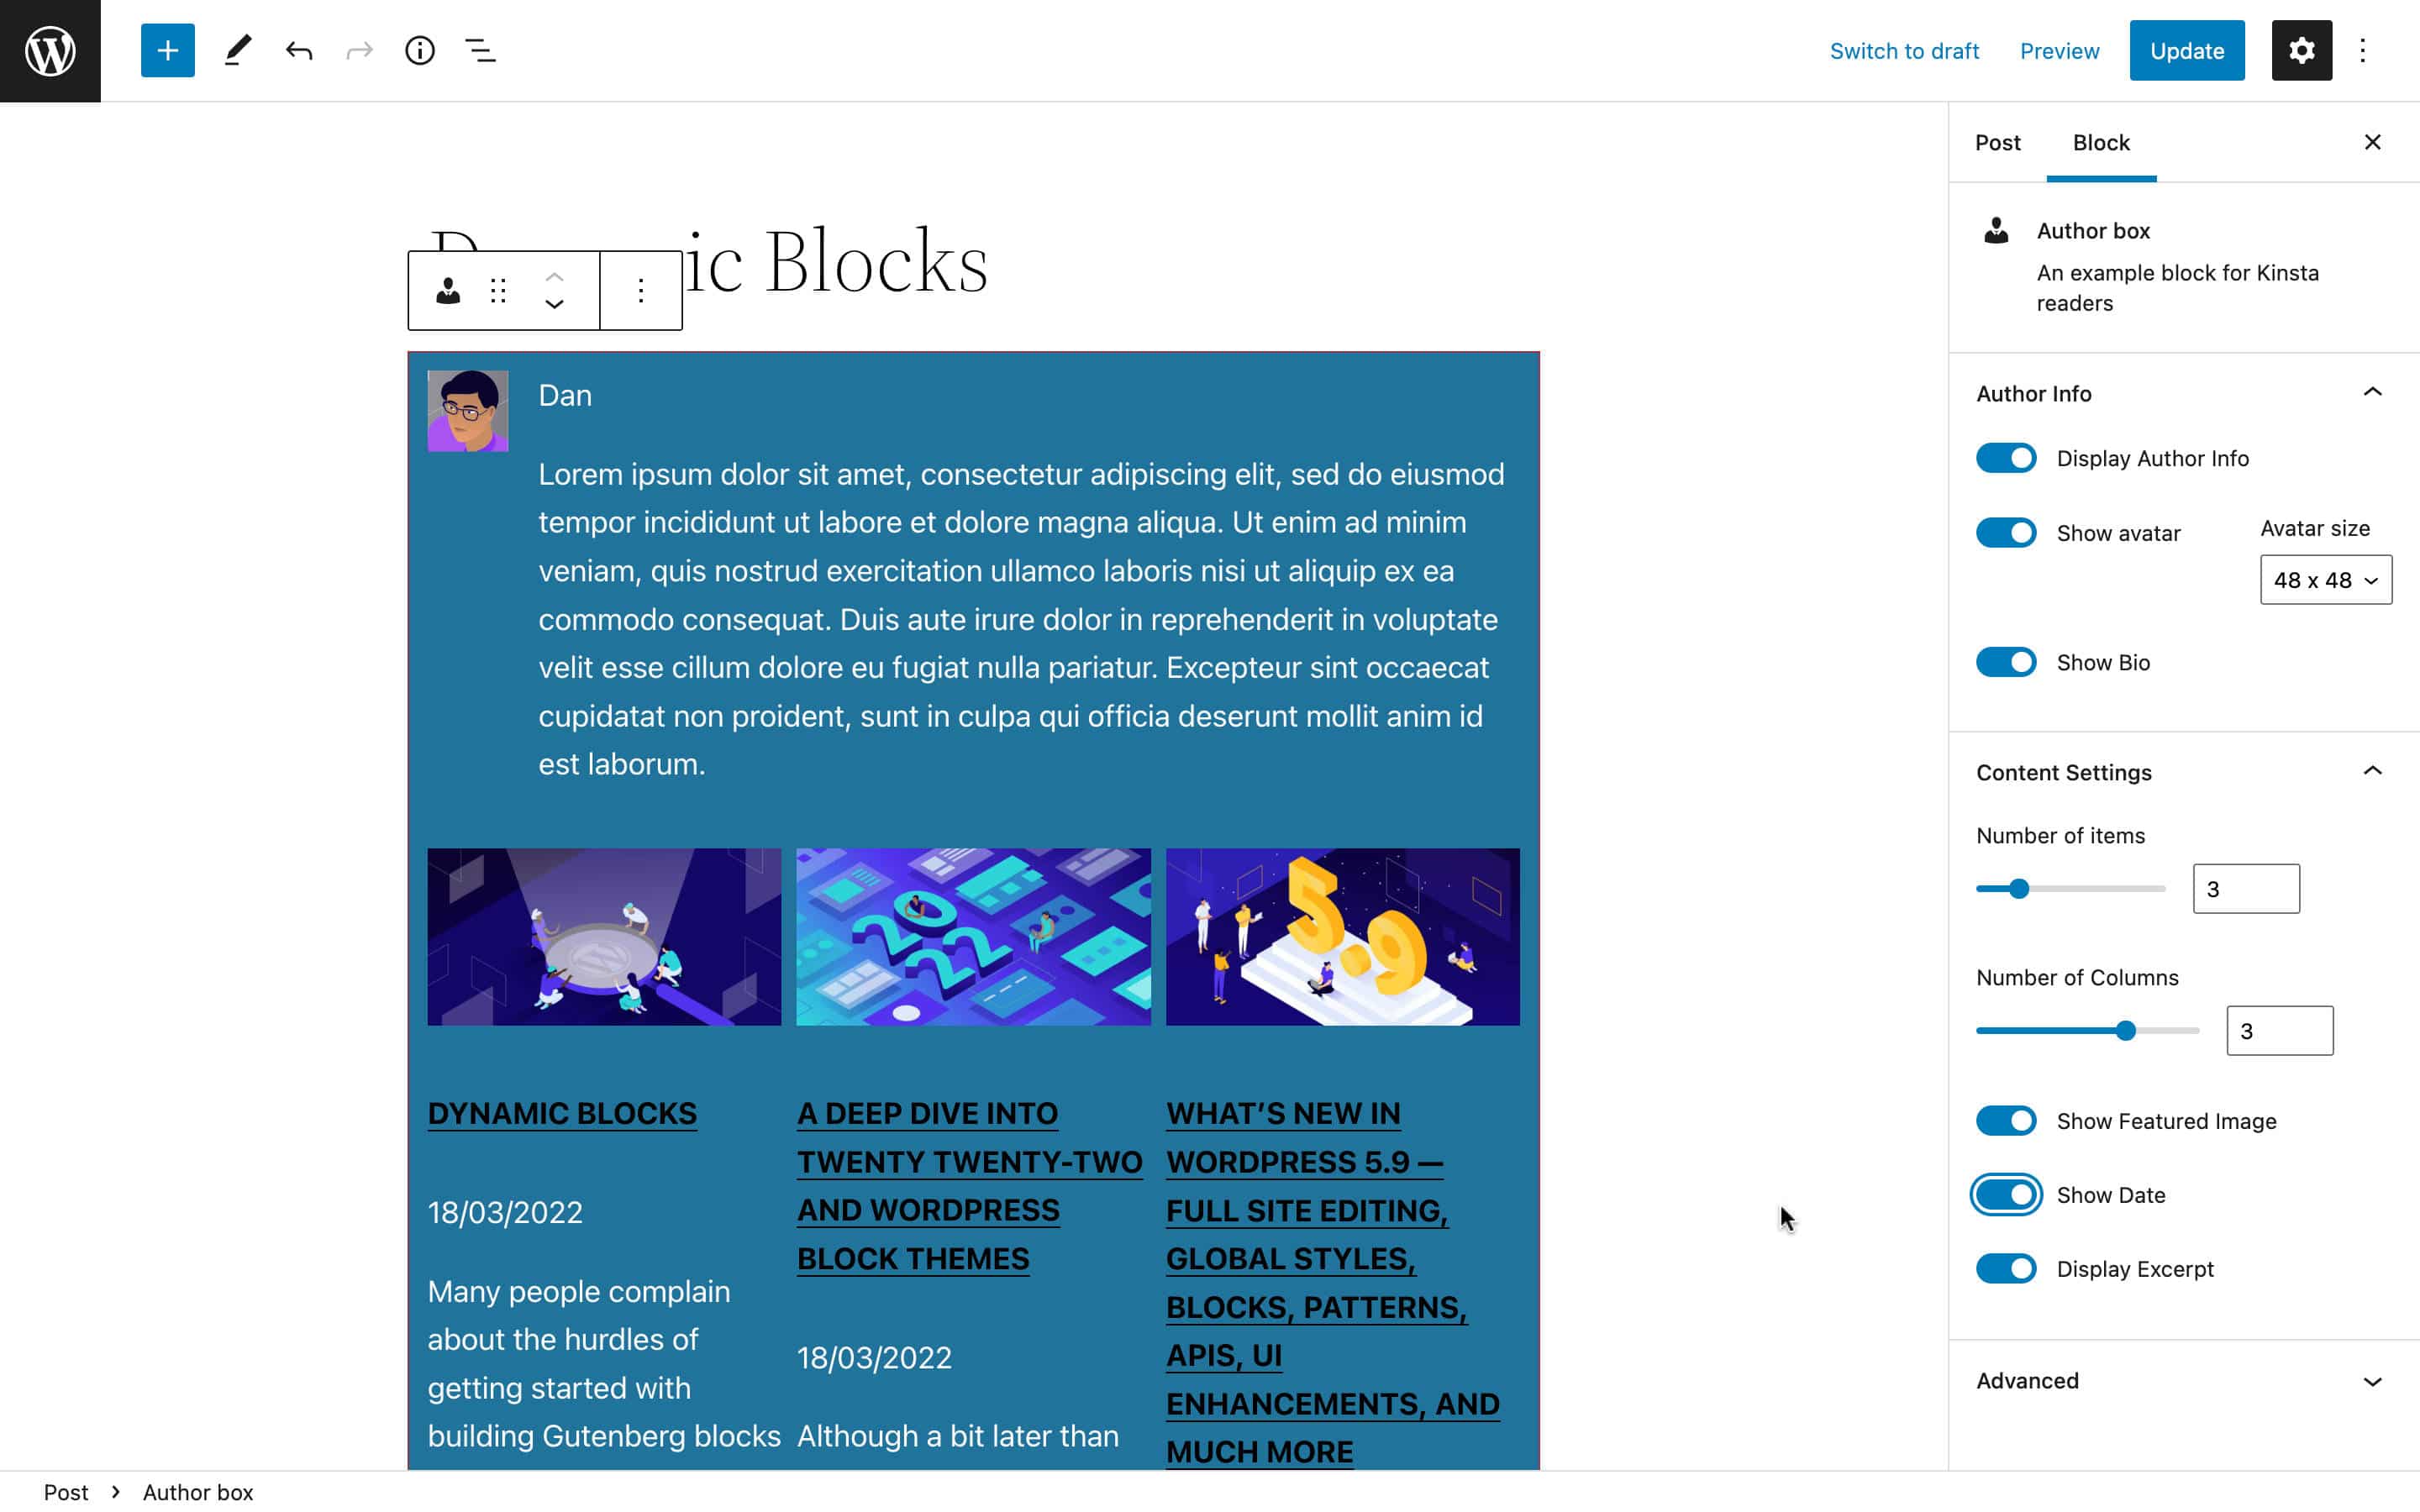 Il nostro blocco personalizzato nell'editor di blocchi.